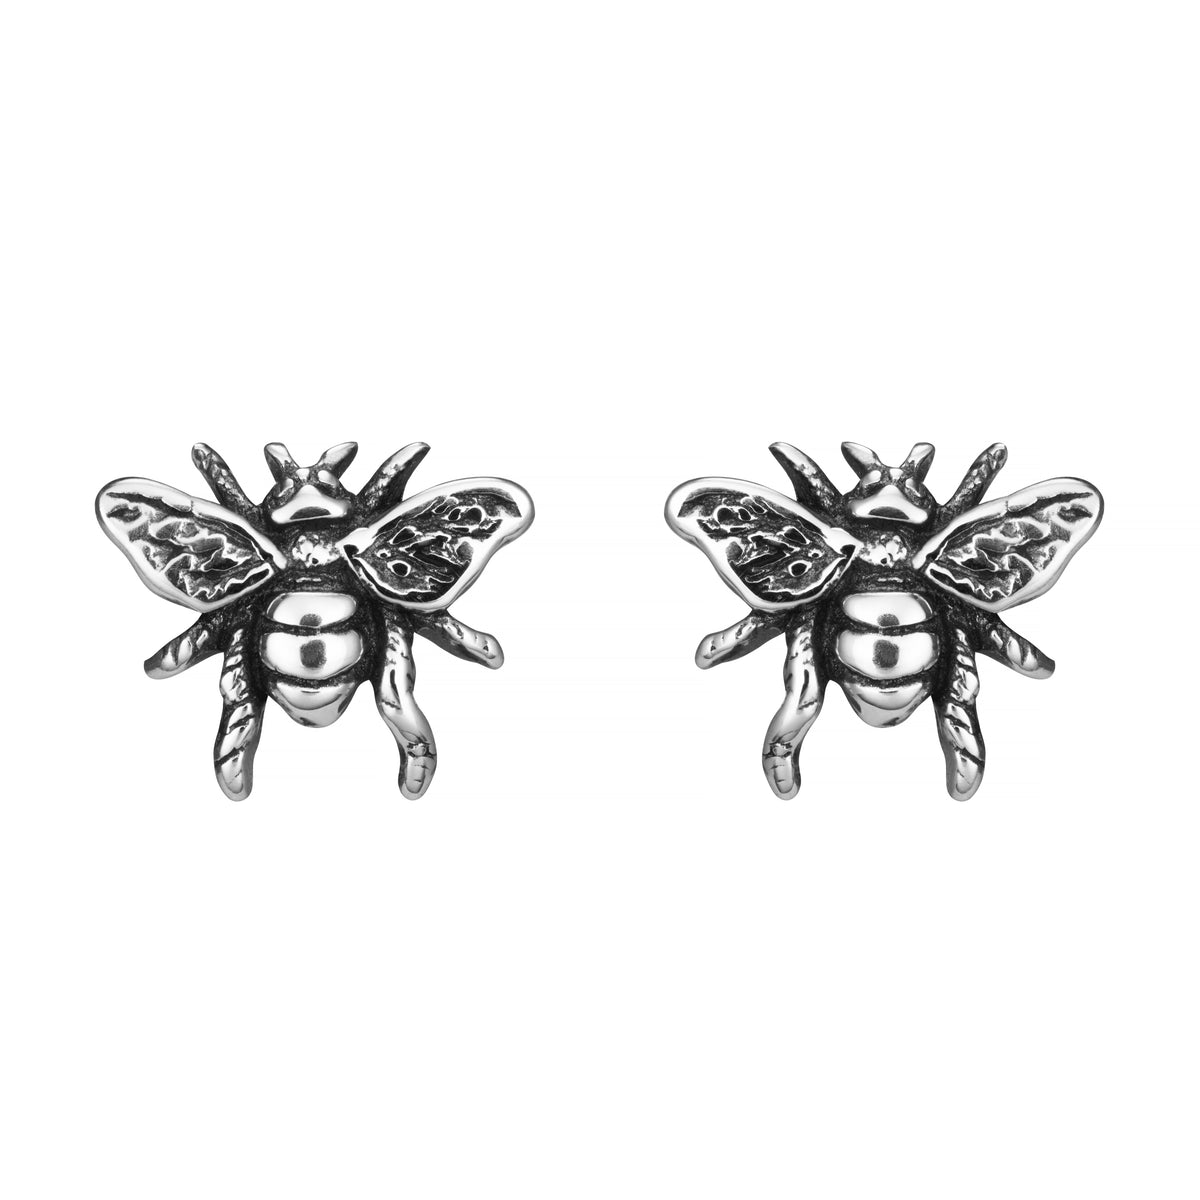 Sterling silver bee nature earrings alternative boho bohemian jewellery jewelry